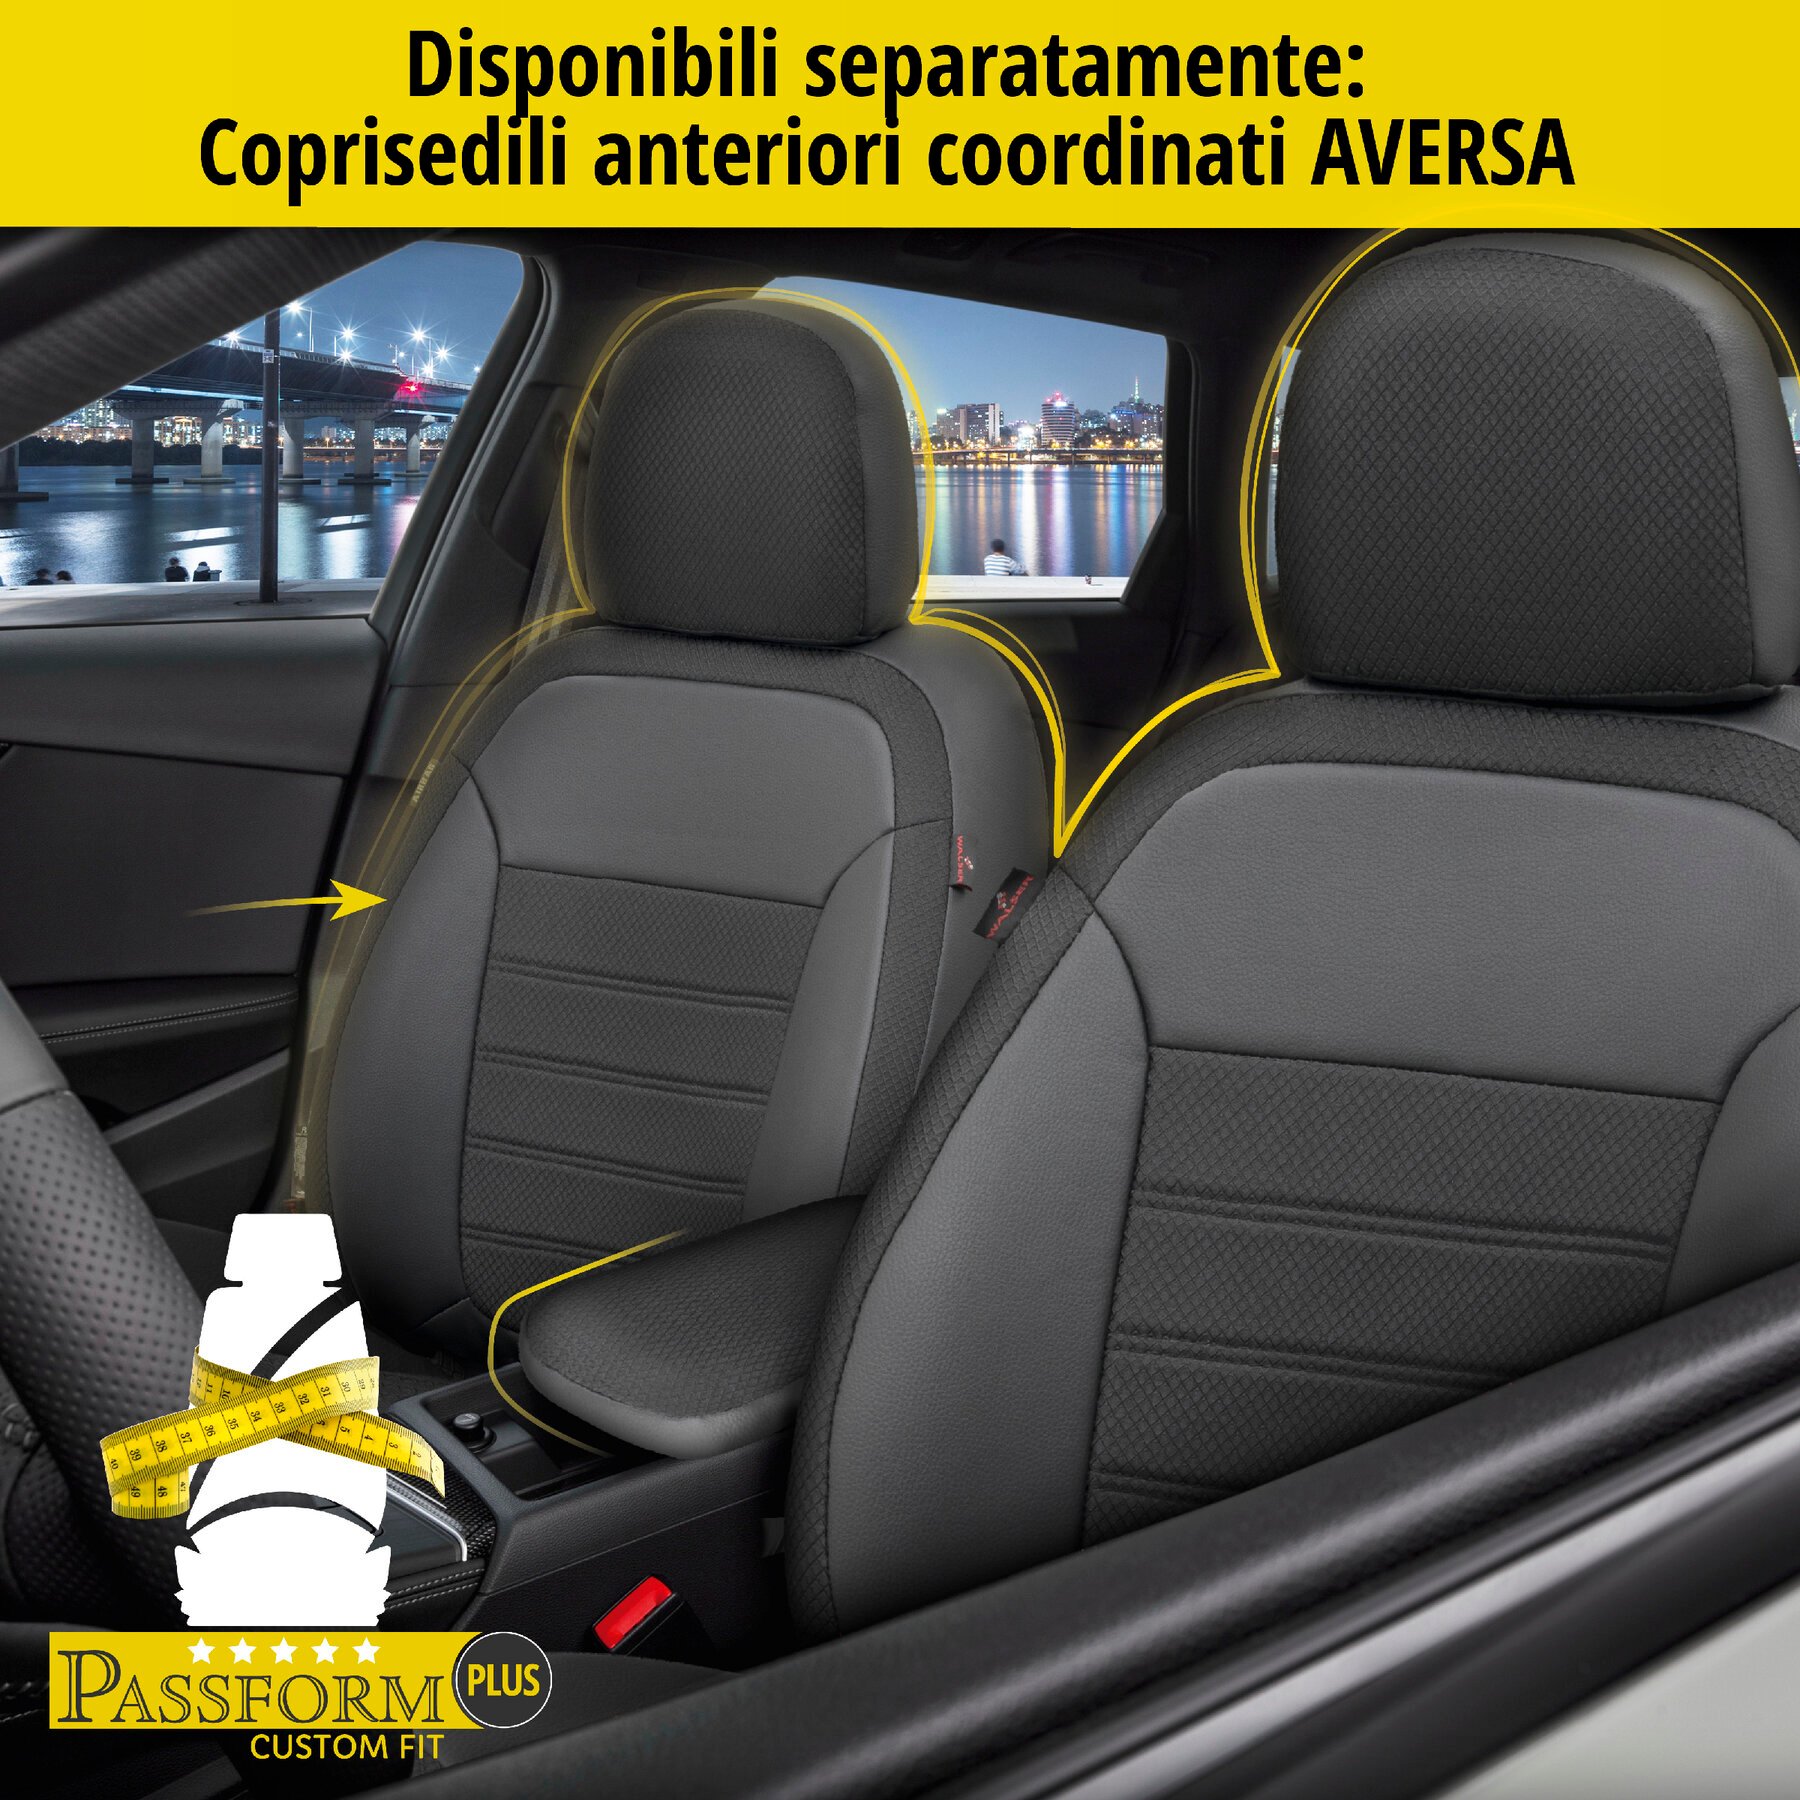 Coprisedili Aversa per Audi A4 Avant (8W5, 8WD, B9) 06/2008-Oggi, 1 coprisedili posteriore per sedili normali